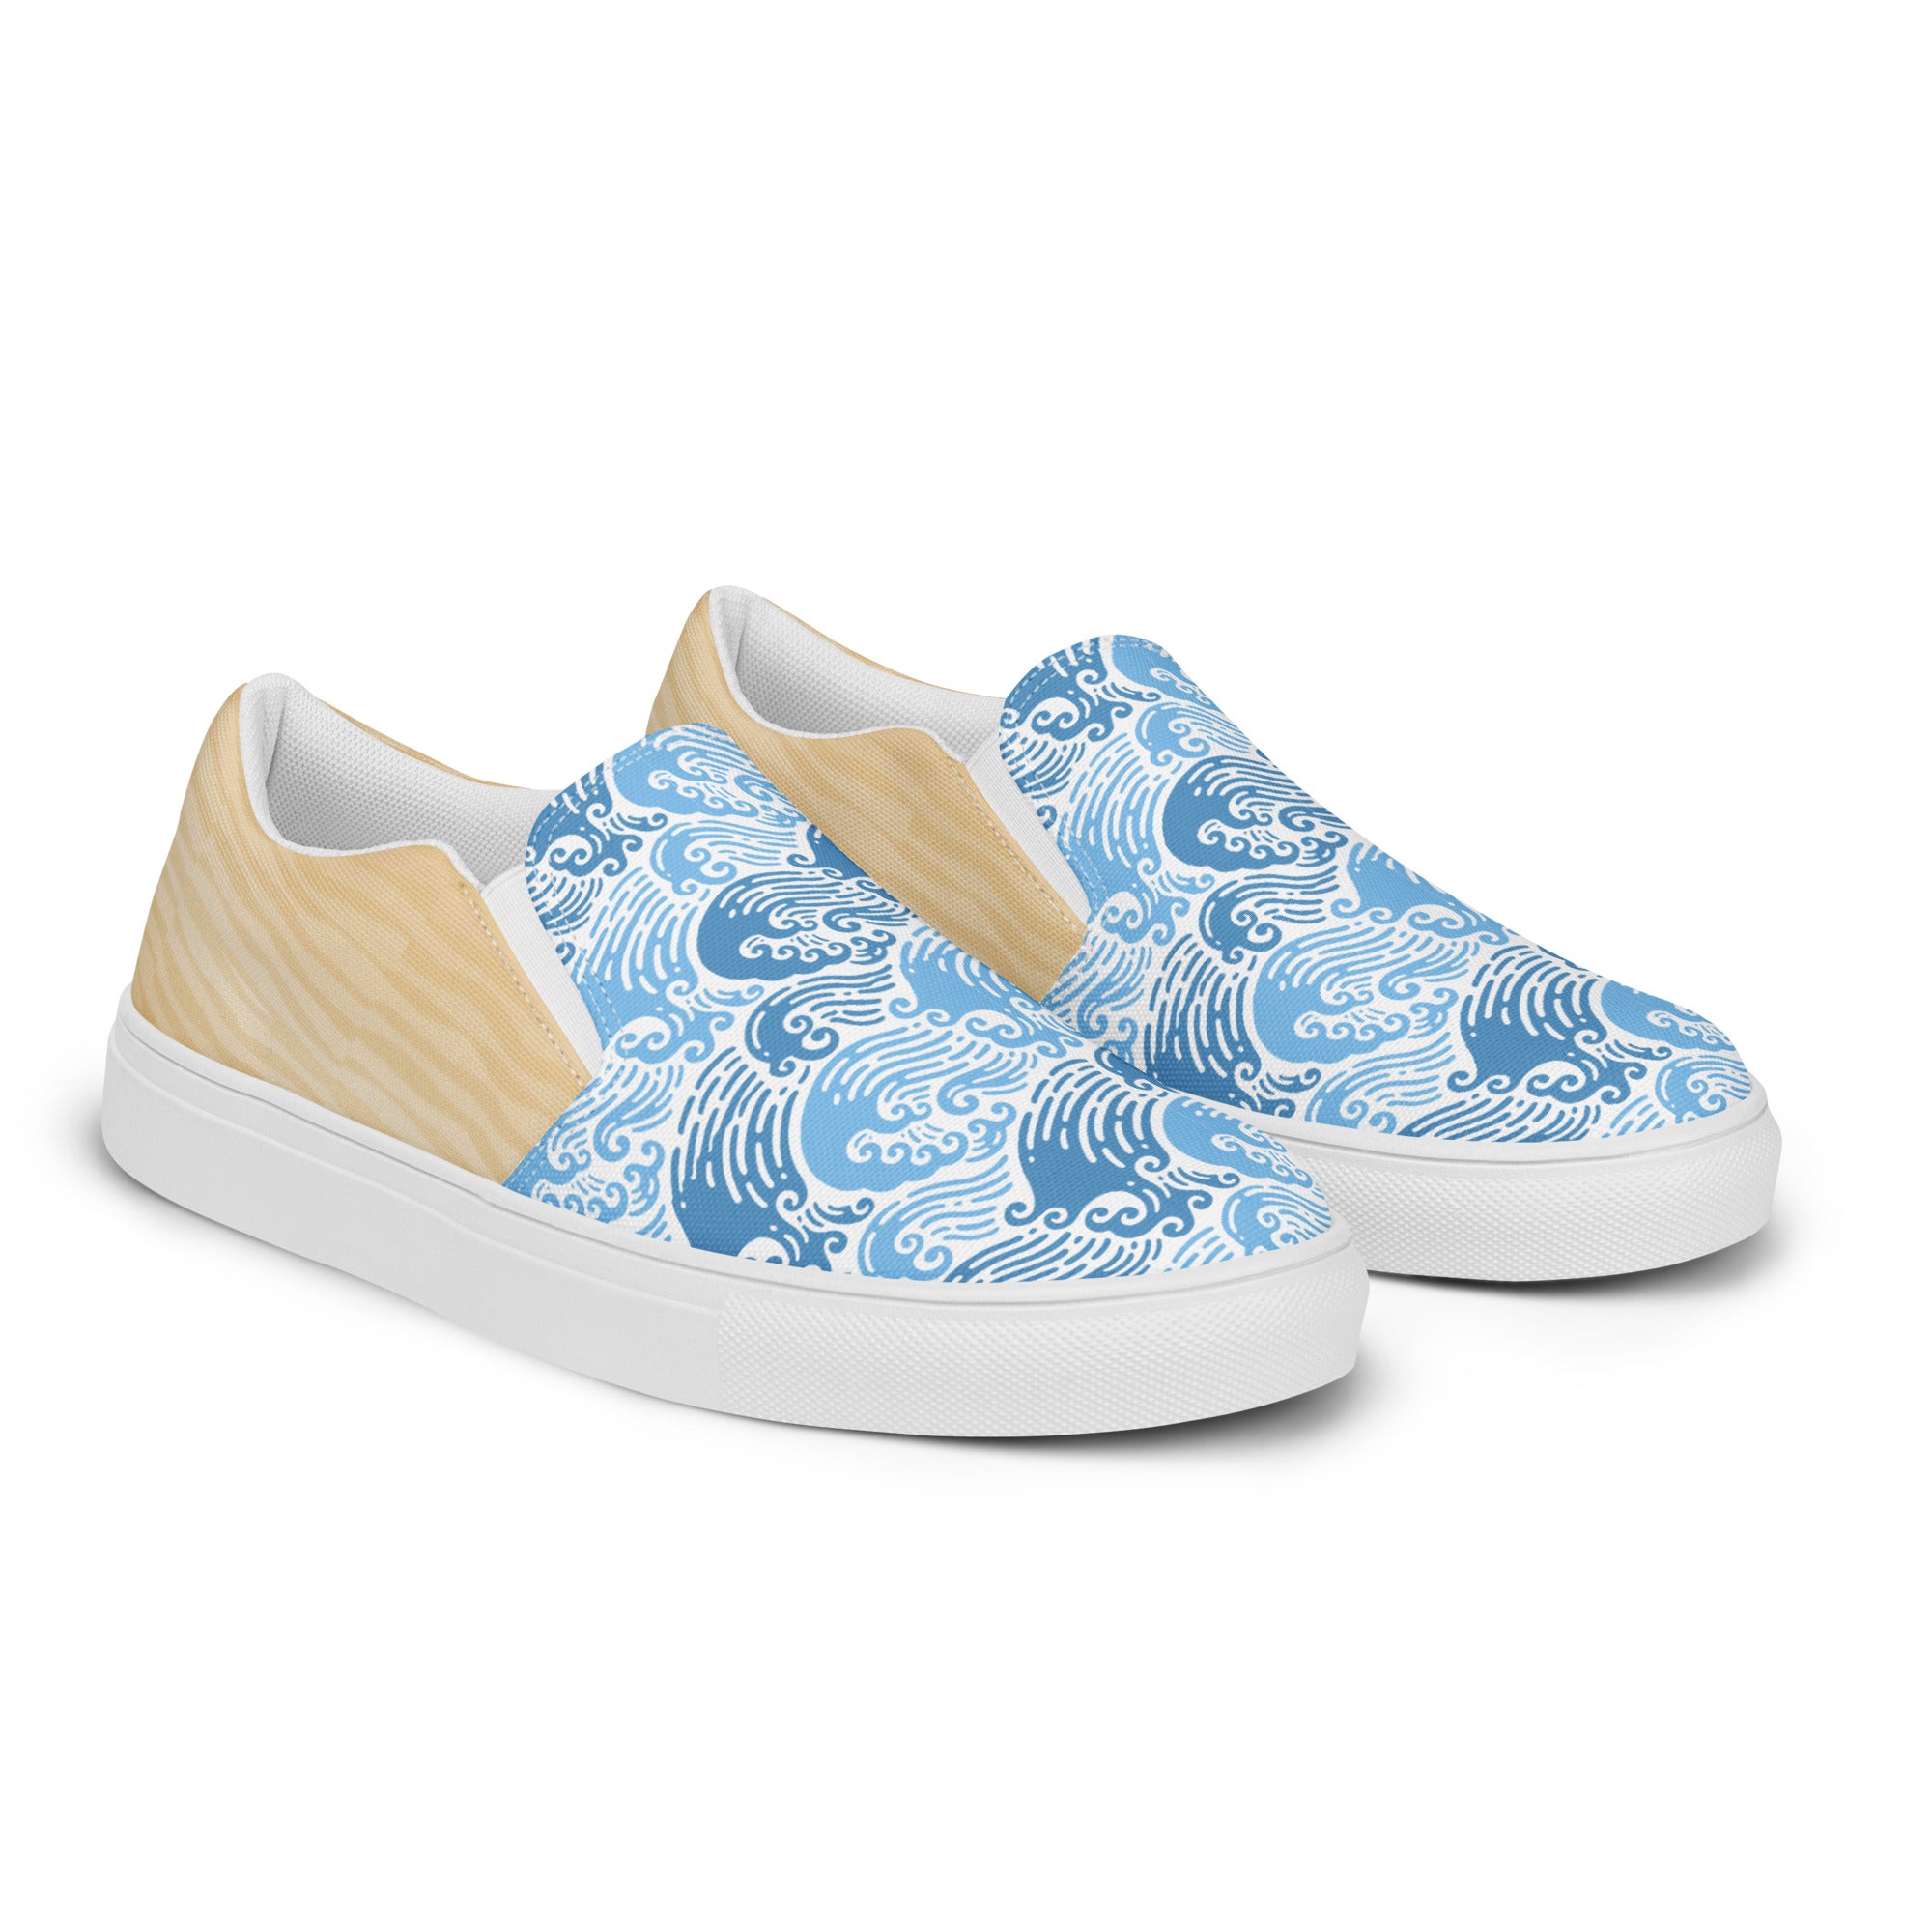 "The Ocean City's" Men’s Slip-on Canvas Shoes